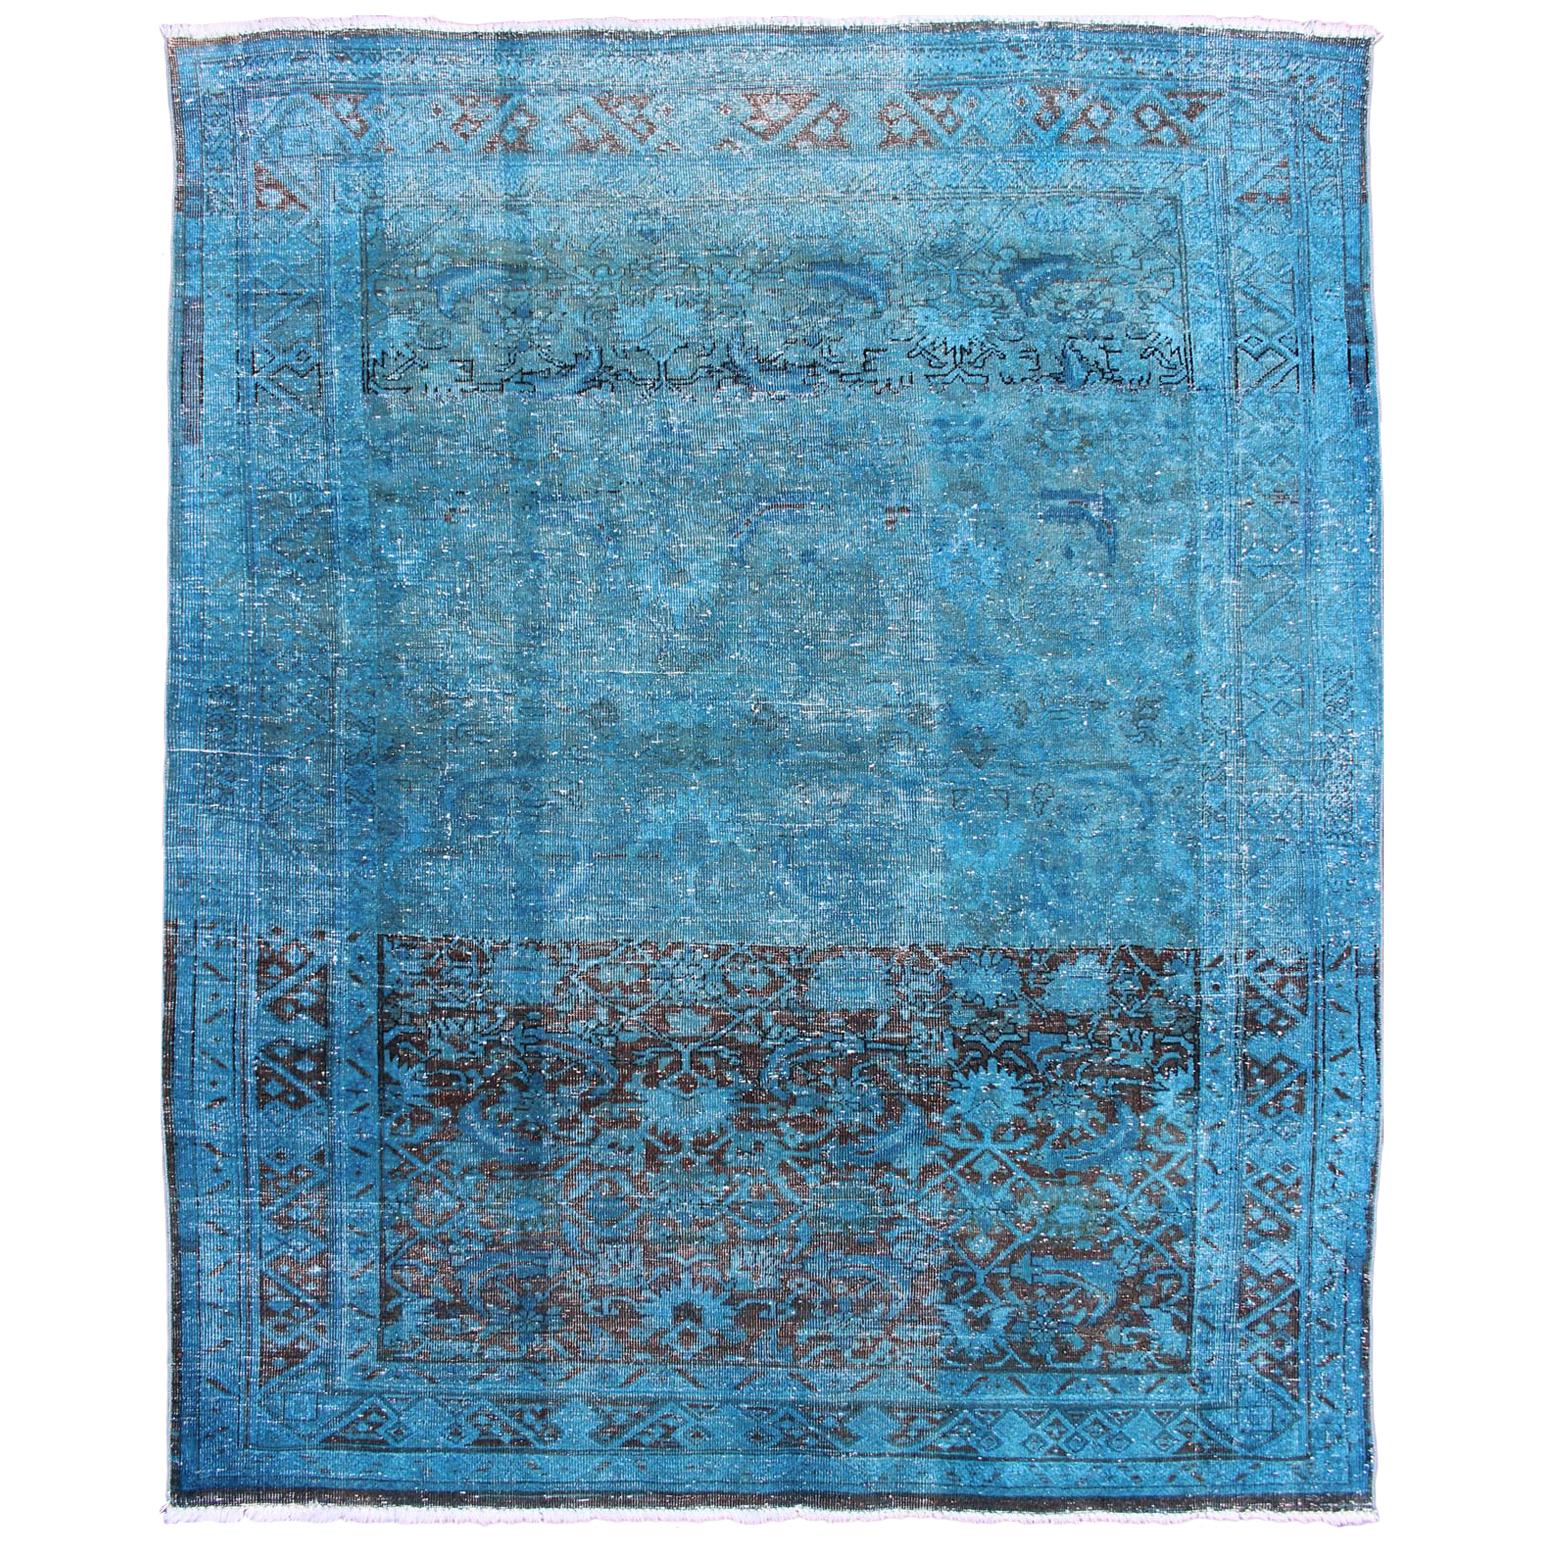 Malayer persan ancien avec motif sur toute sa surface dans les tons bleus